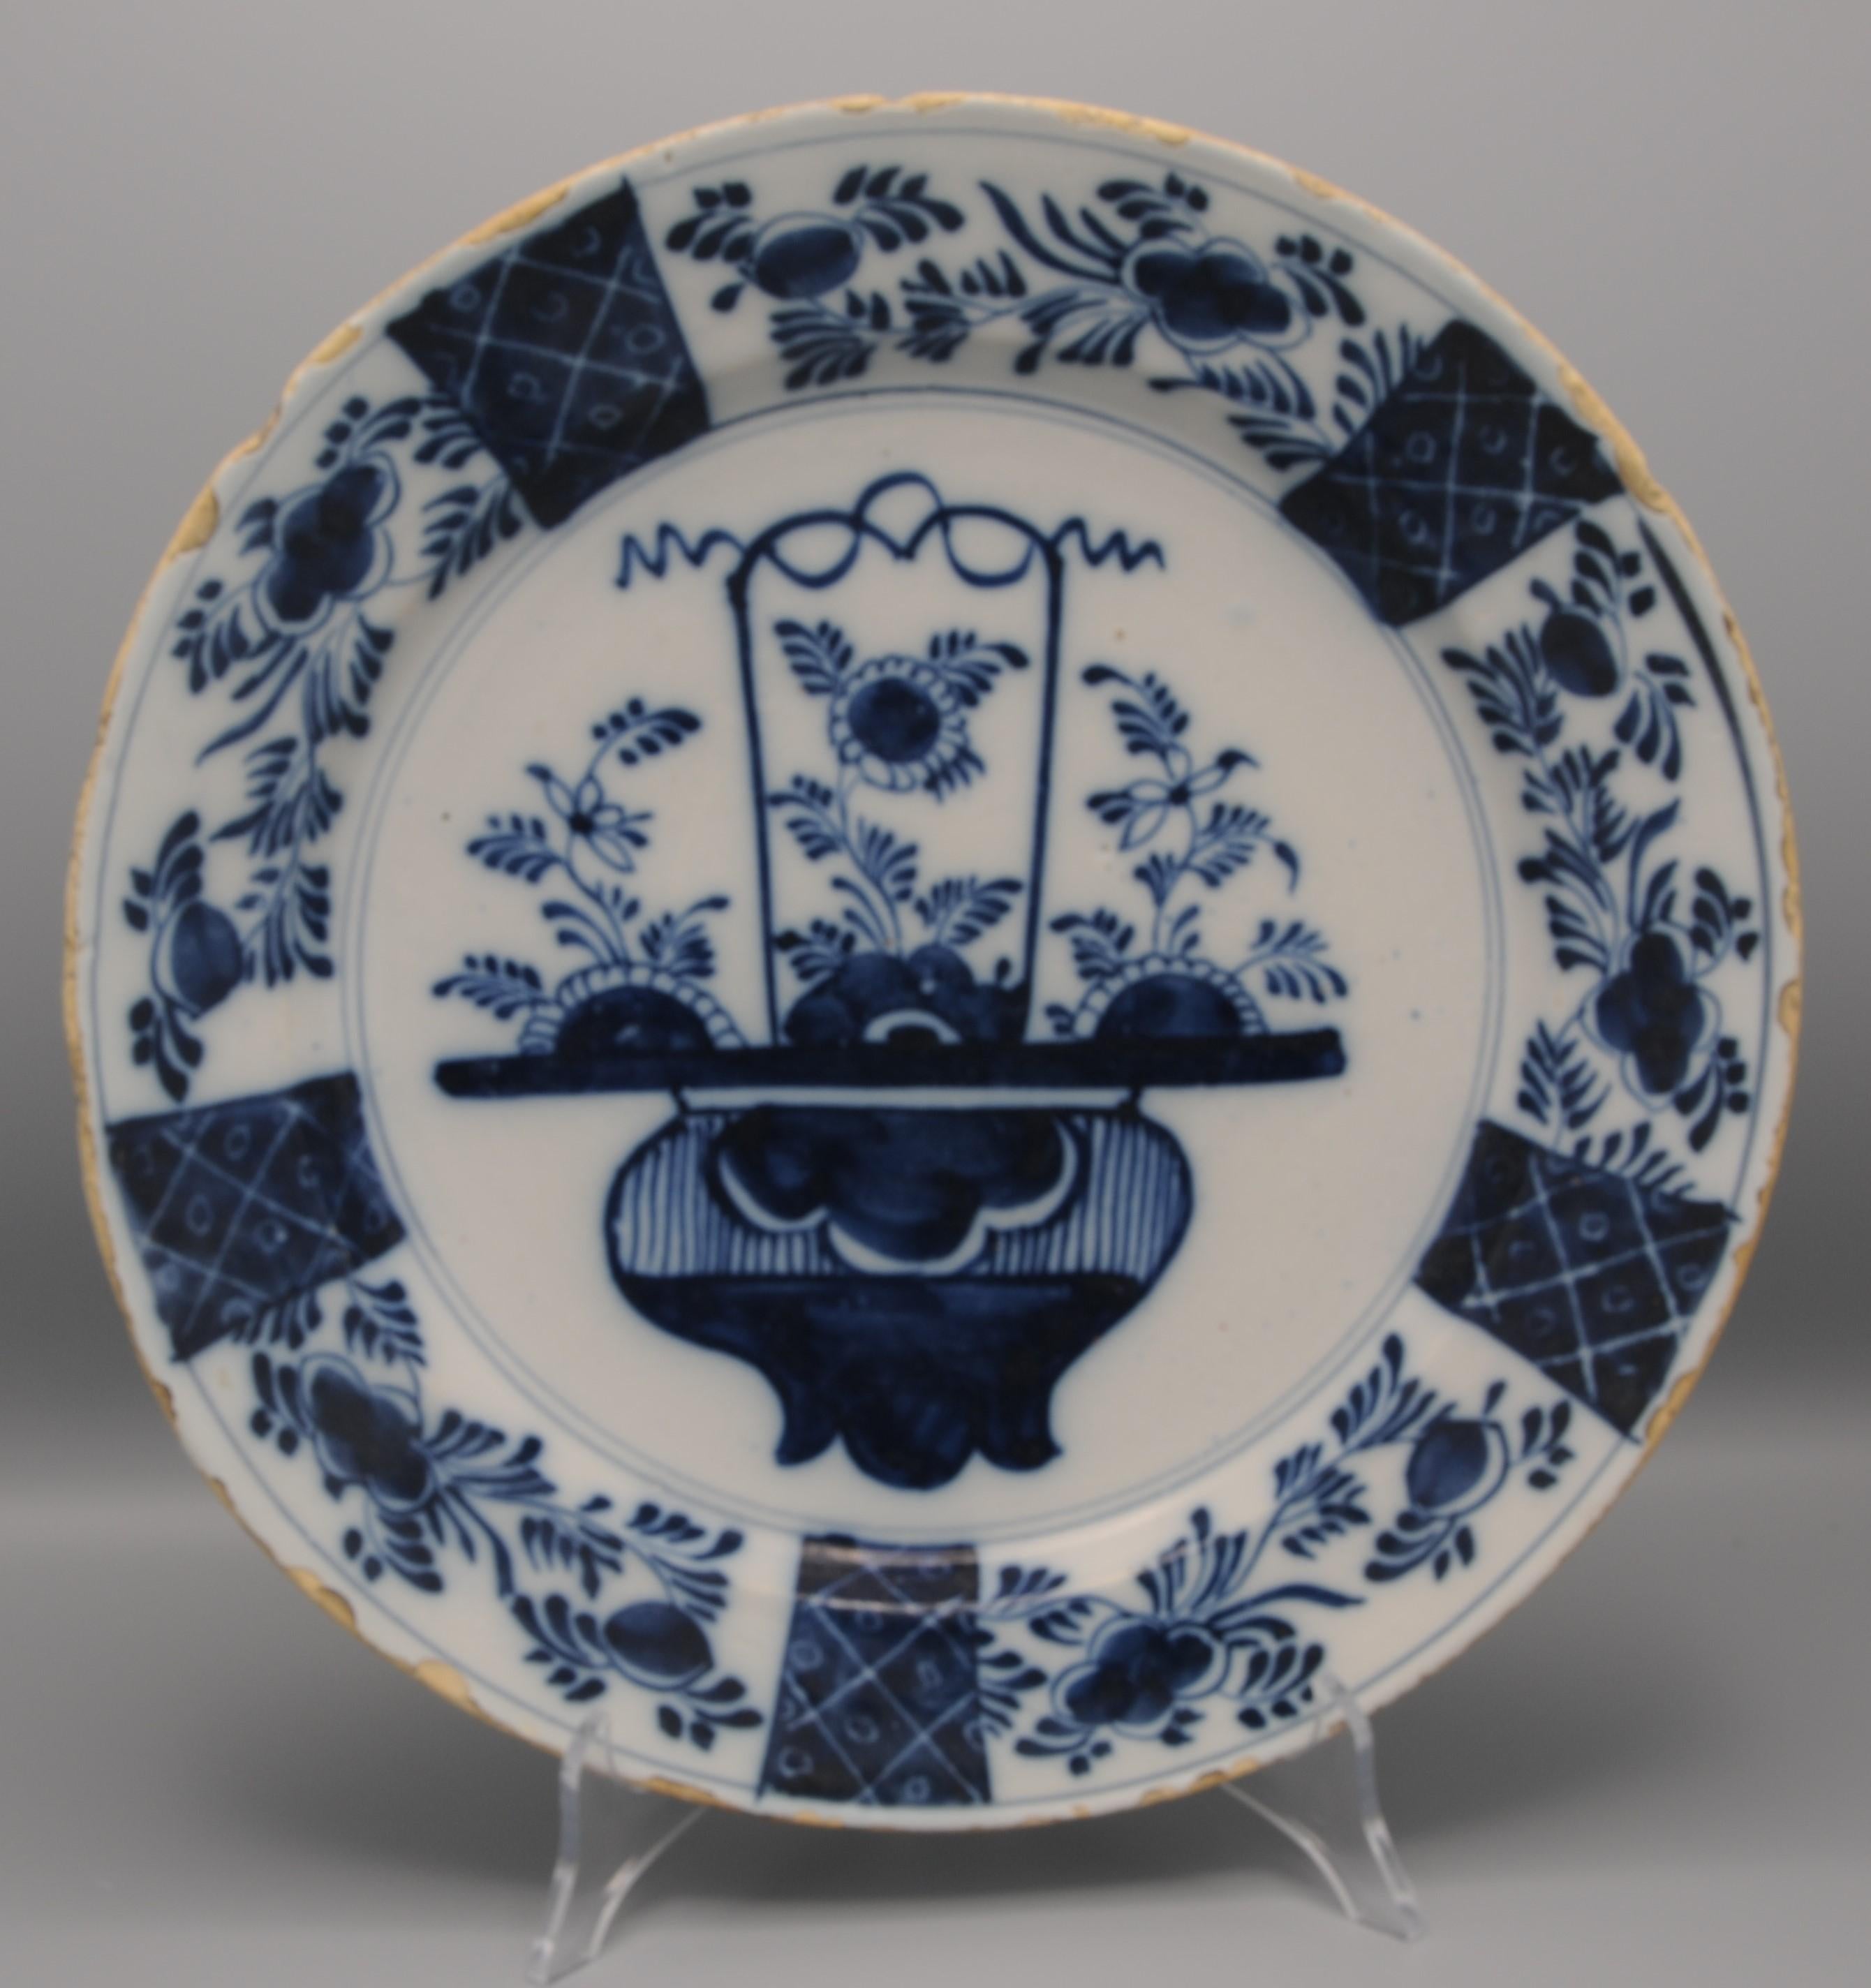 Plateau en faïence bleue du milieu du XVIIIe siècle avec un décor chinois d'un panier fleuri. 
Belle bordure décorée de panneaux alternés avec des feuillages et des traceries
Non marqué
Bonne qualité de la peinture
Bon état ; seulement l'usure